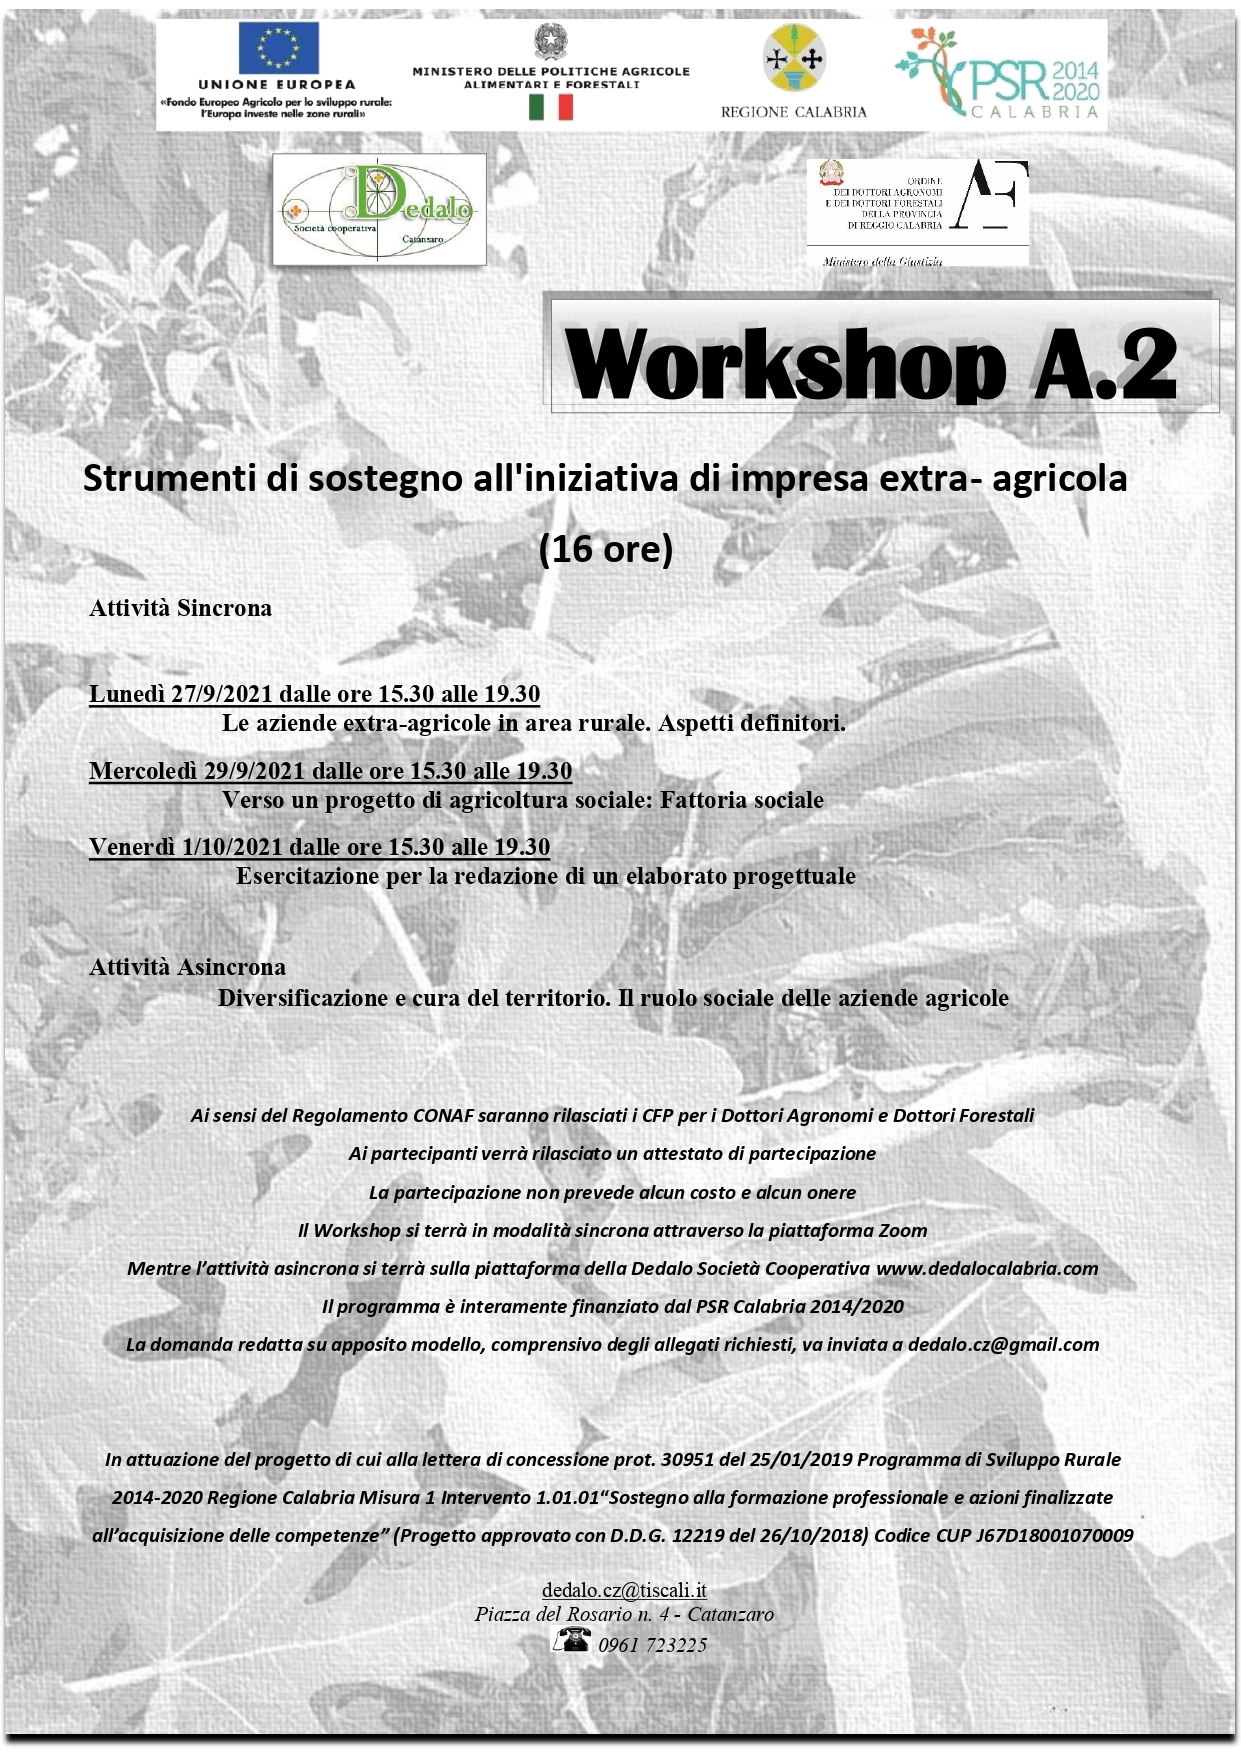 Workshop A.2. Strumenti di sostegno all’iniziativa di impresa extra-agricola